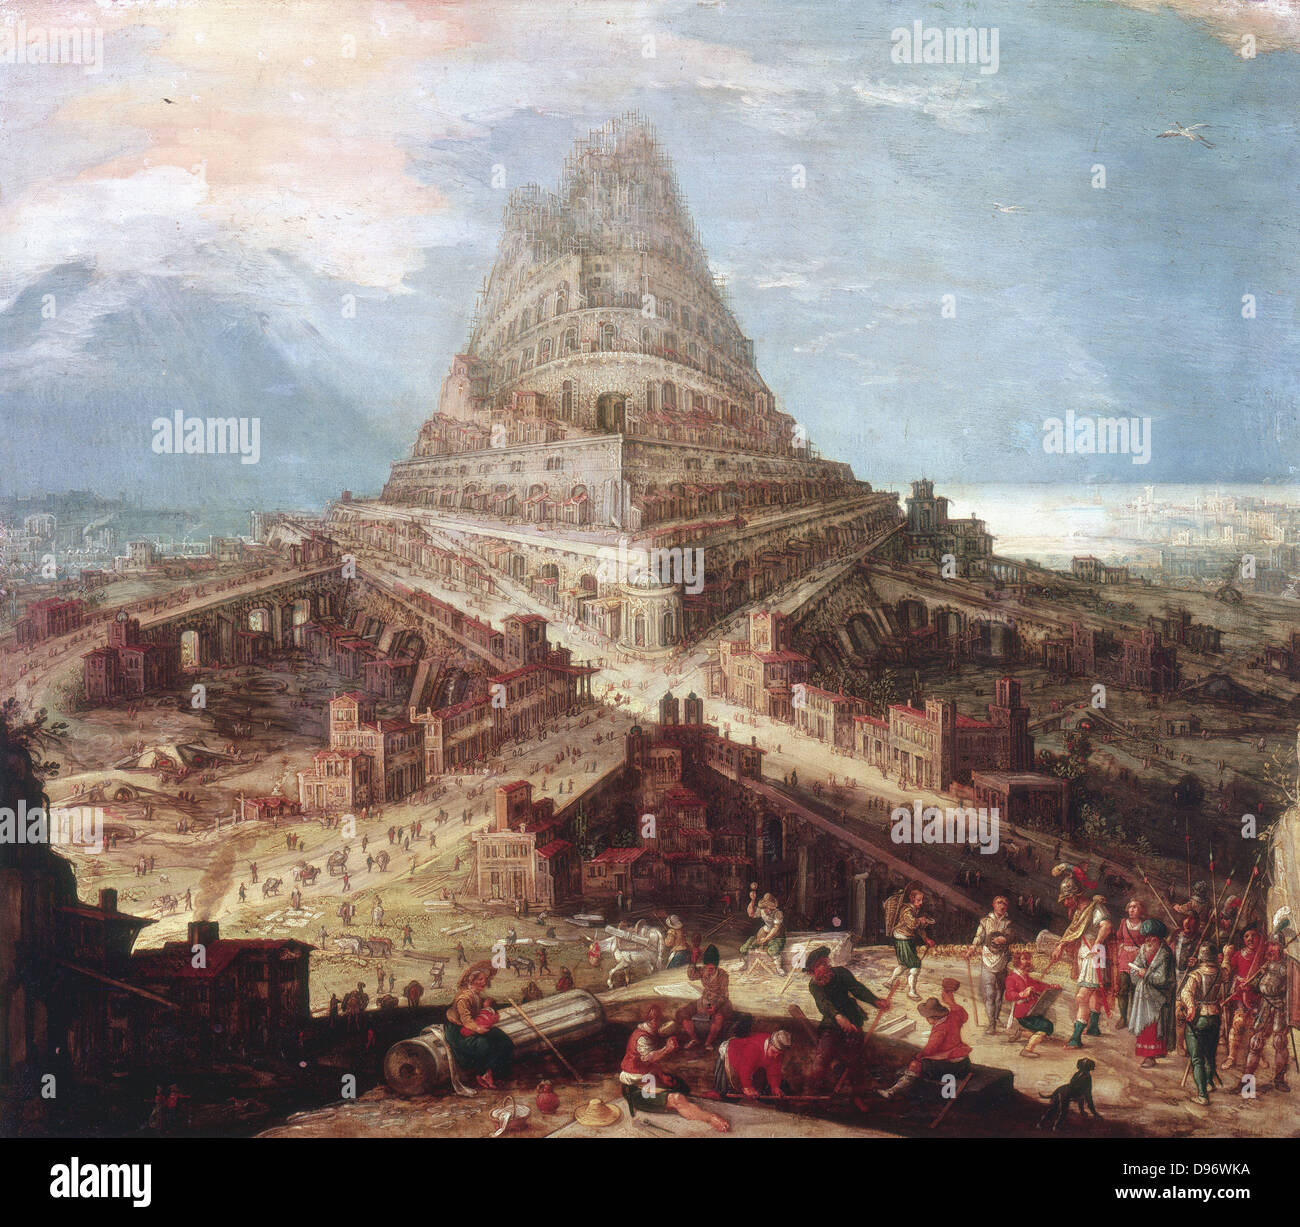 Bau des Turms von Babel ". Flämische Künstler Hendrick van Cleve (1525-1589). Stockfoto